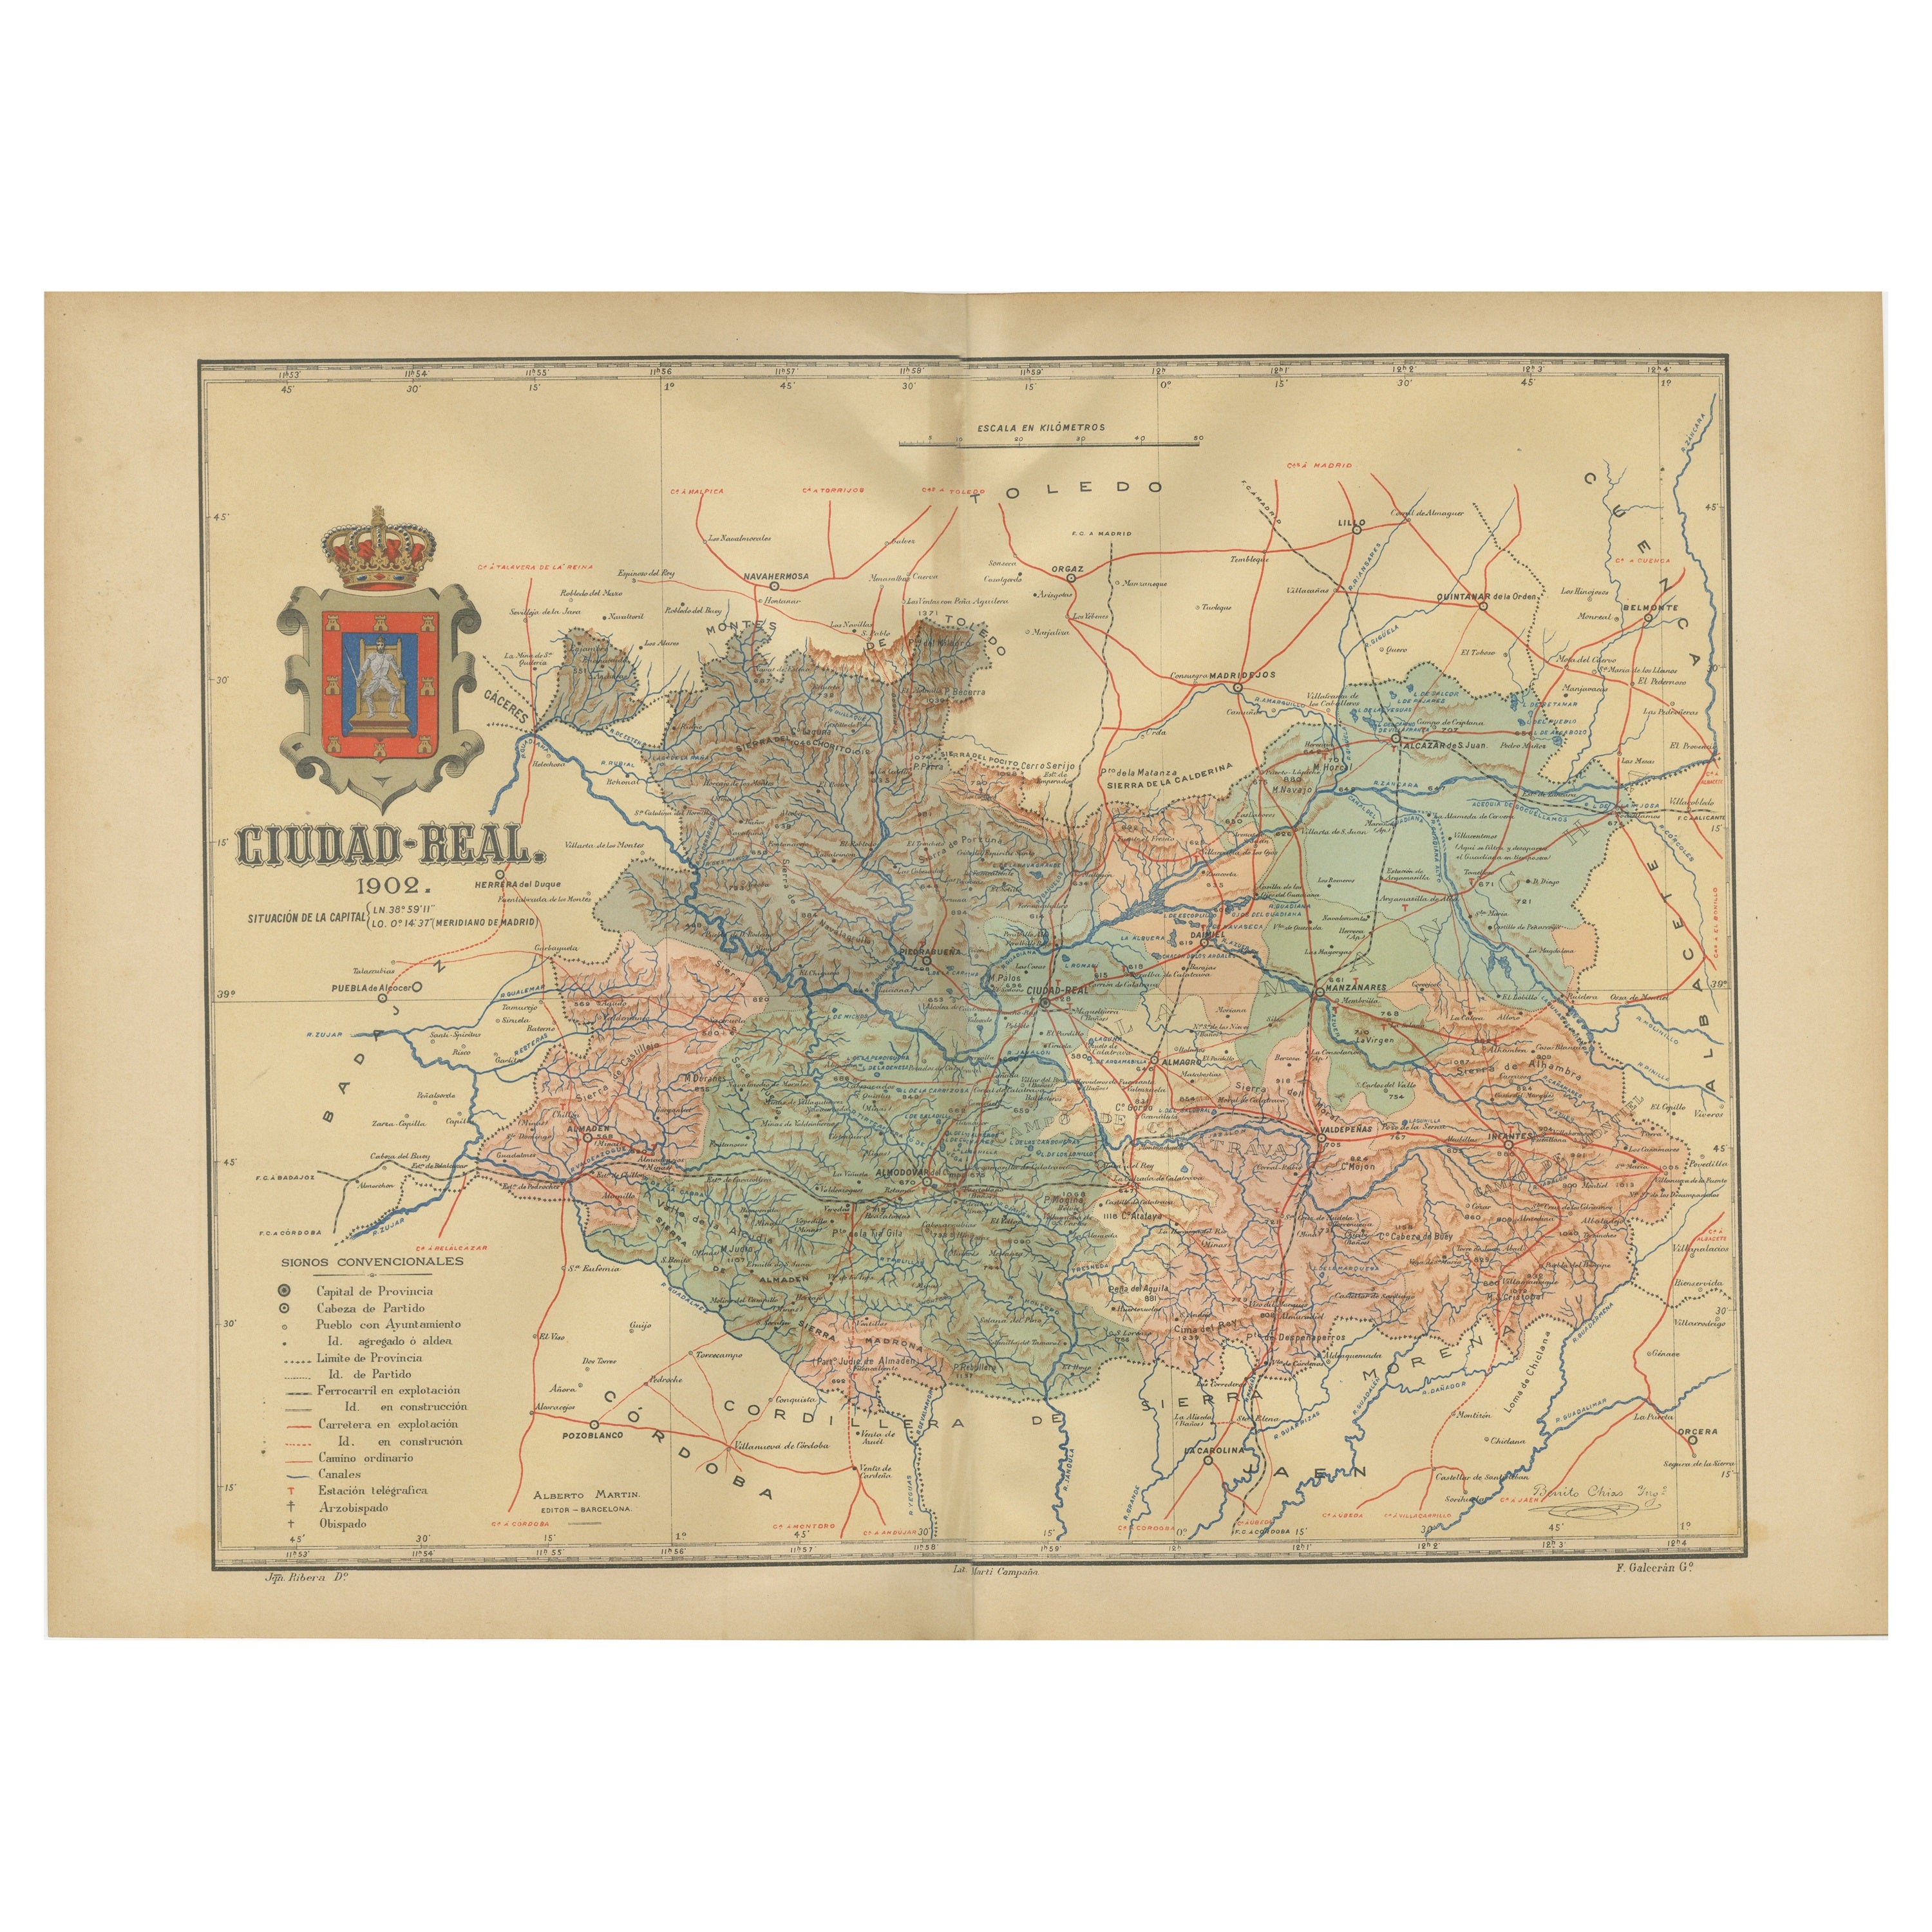 Ciudad Real 1902: Eine detaillierte Kartographische Untersuchung von La Mancha in Spanien im Angebot